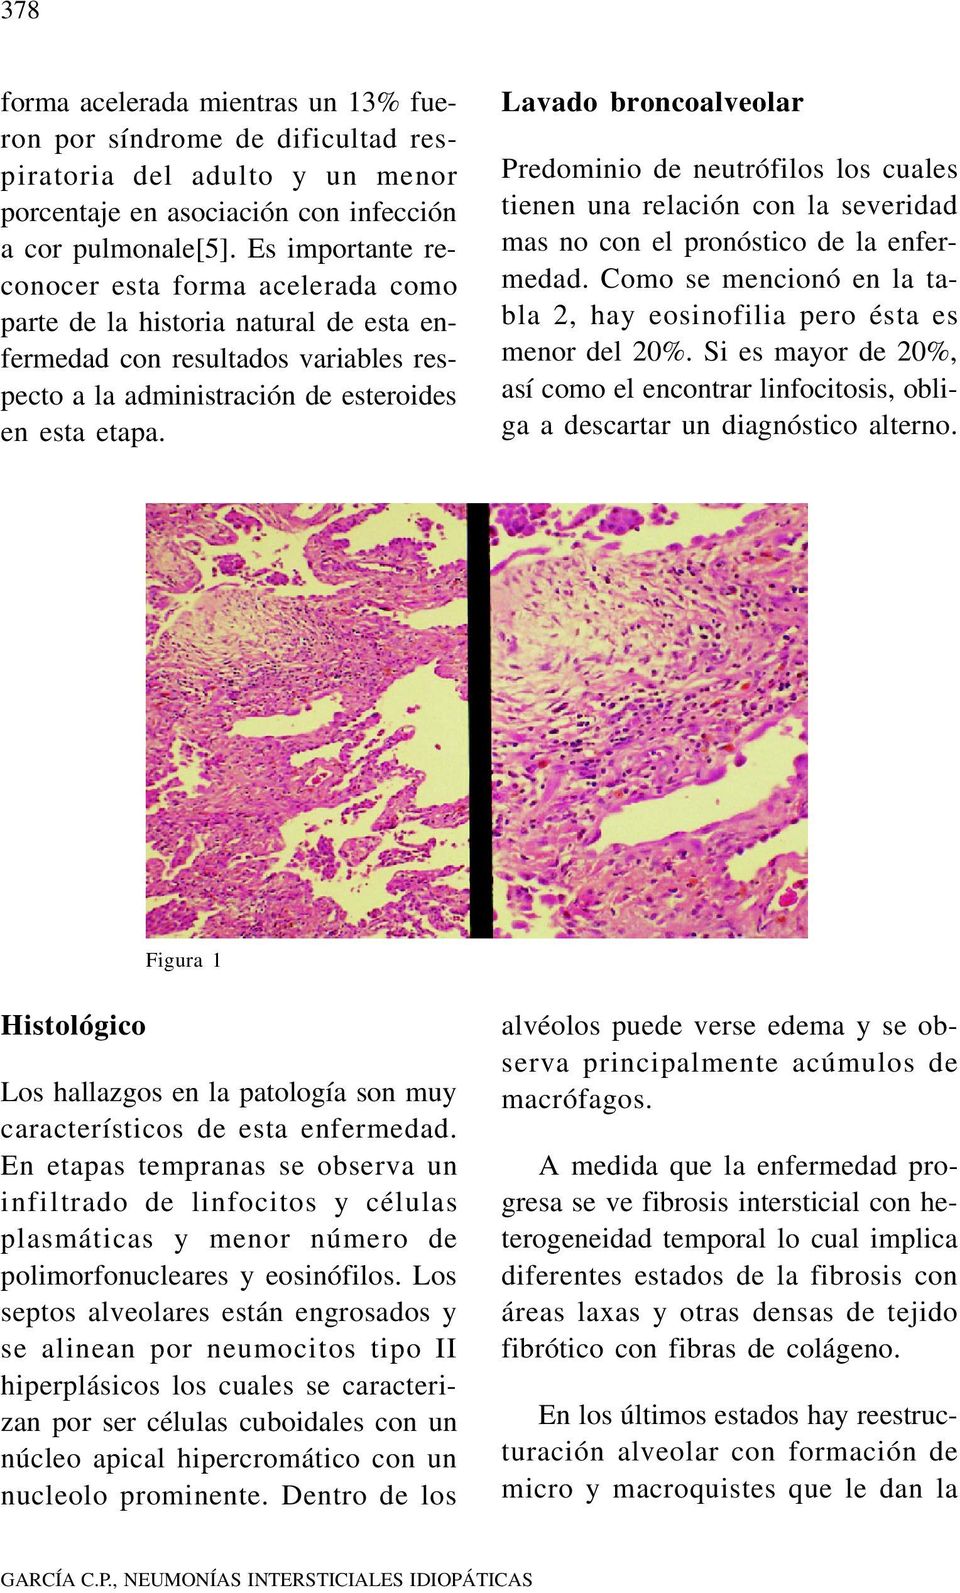 Lavado broncoalveolar Predominio de neutrófilos los cuales tienen una relación con la severidad mas no con el pronóstico de la enfermedad.